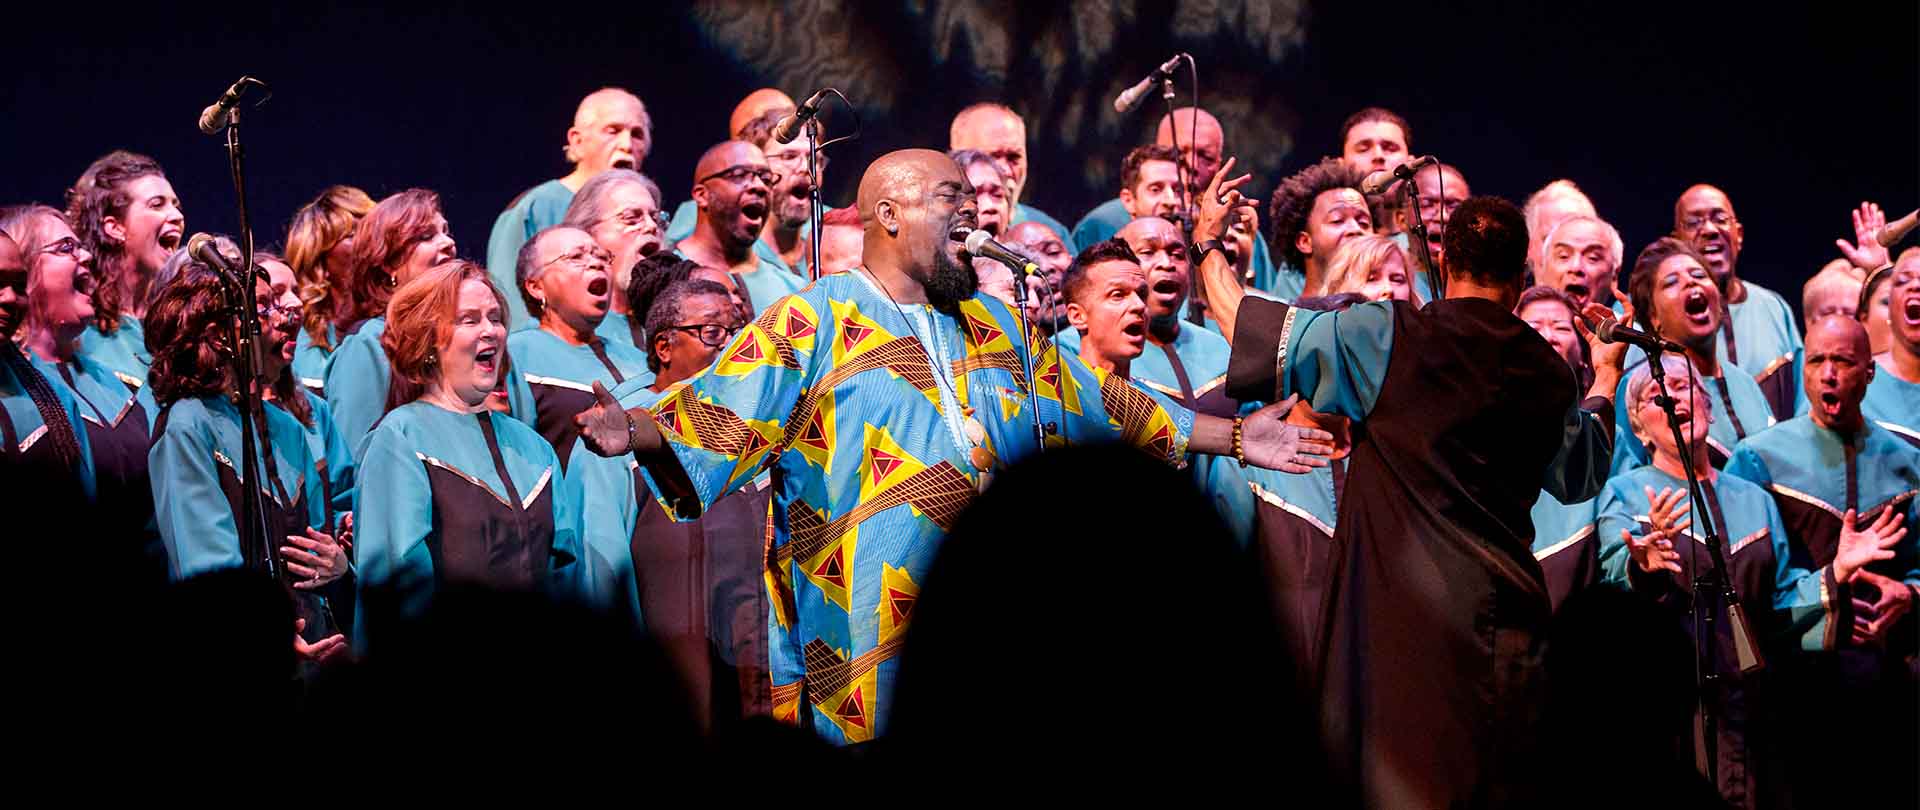 Oakland Interfaith Gospel Choir